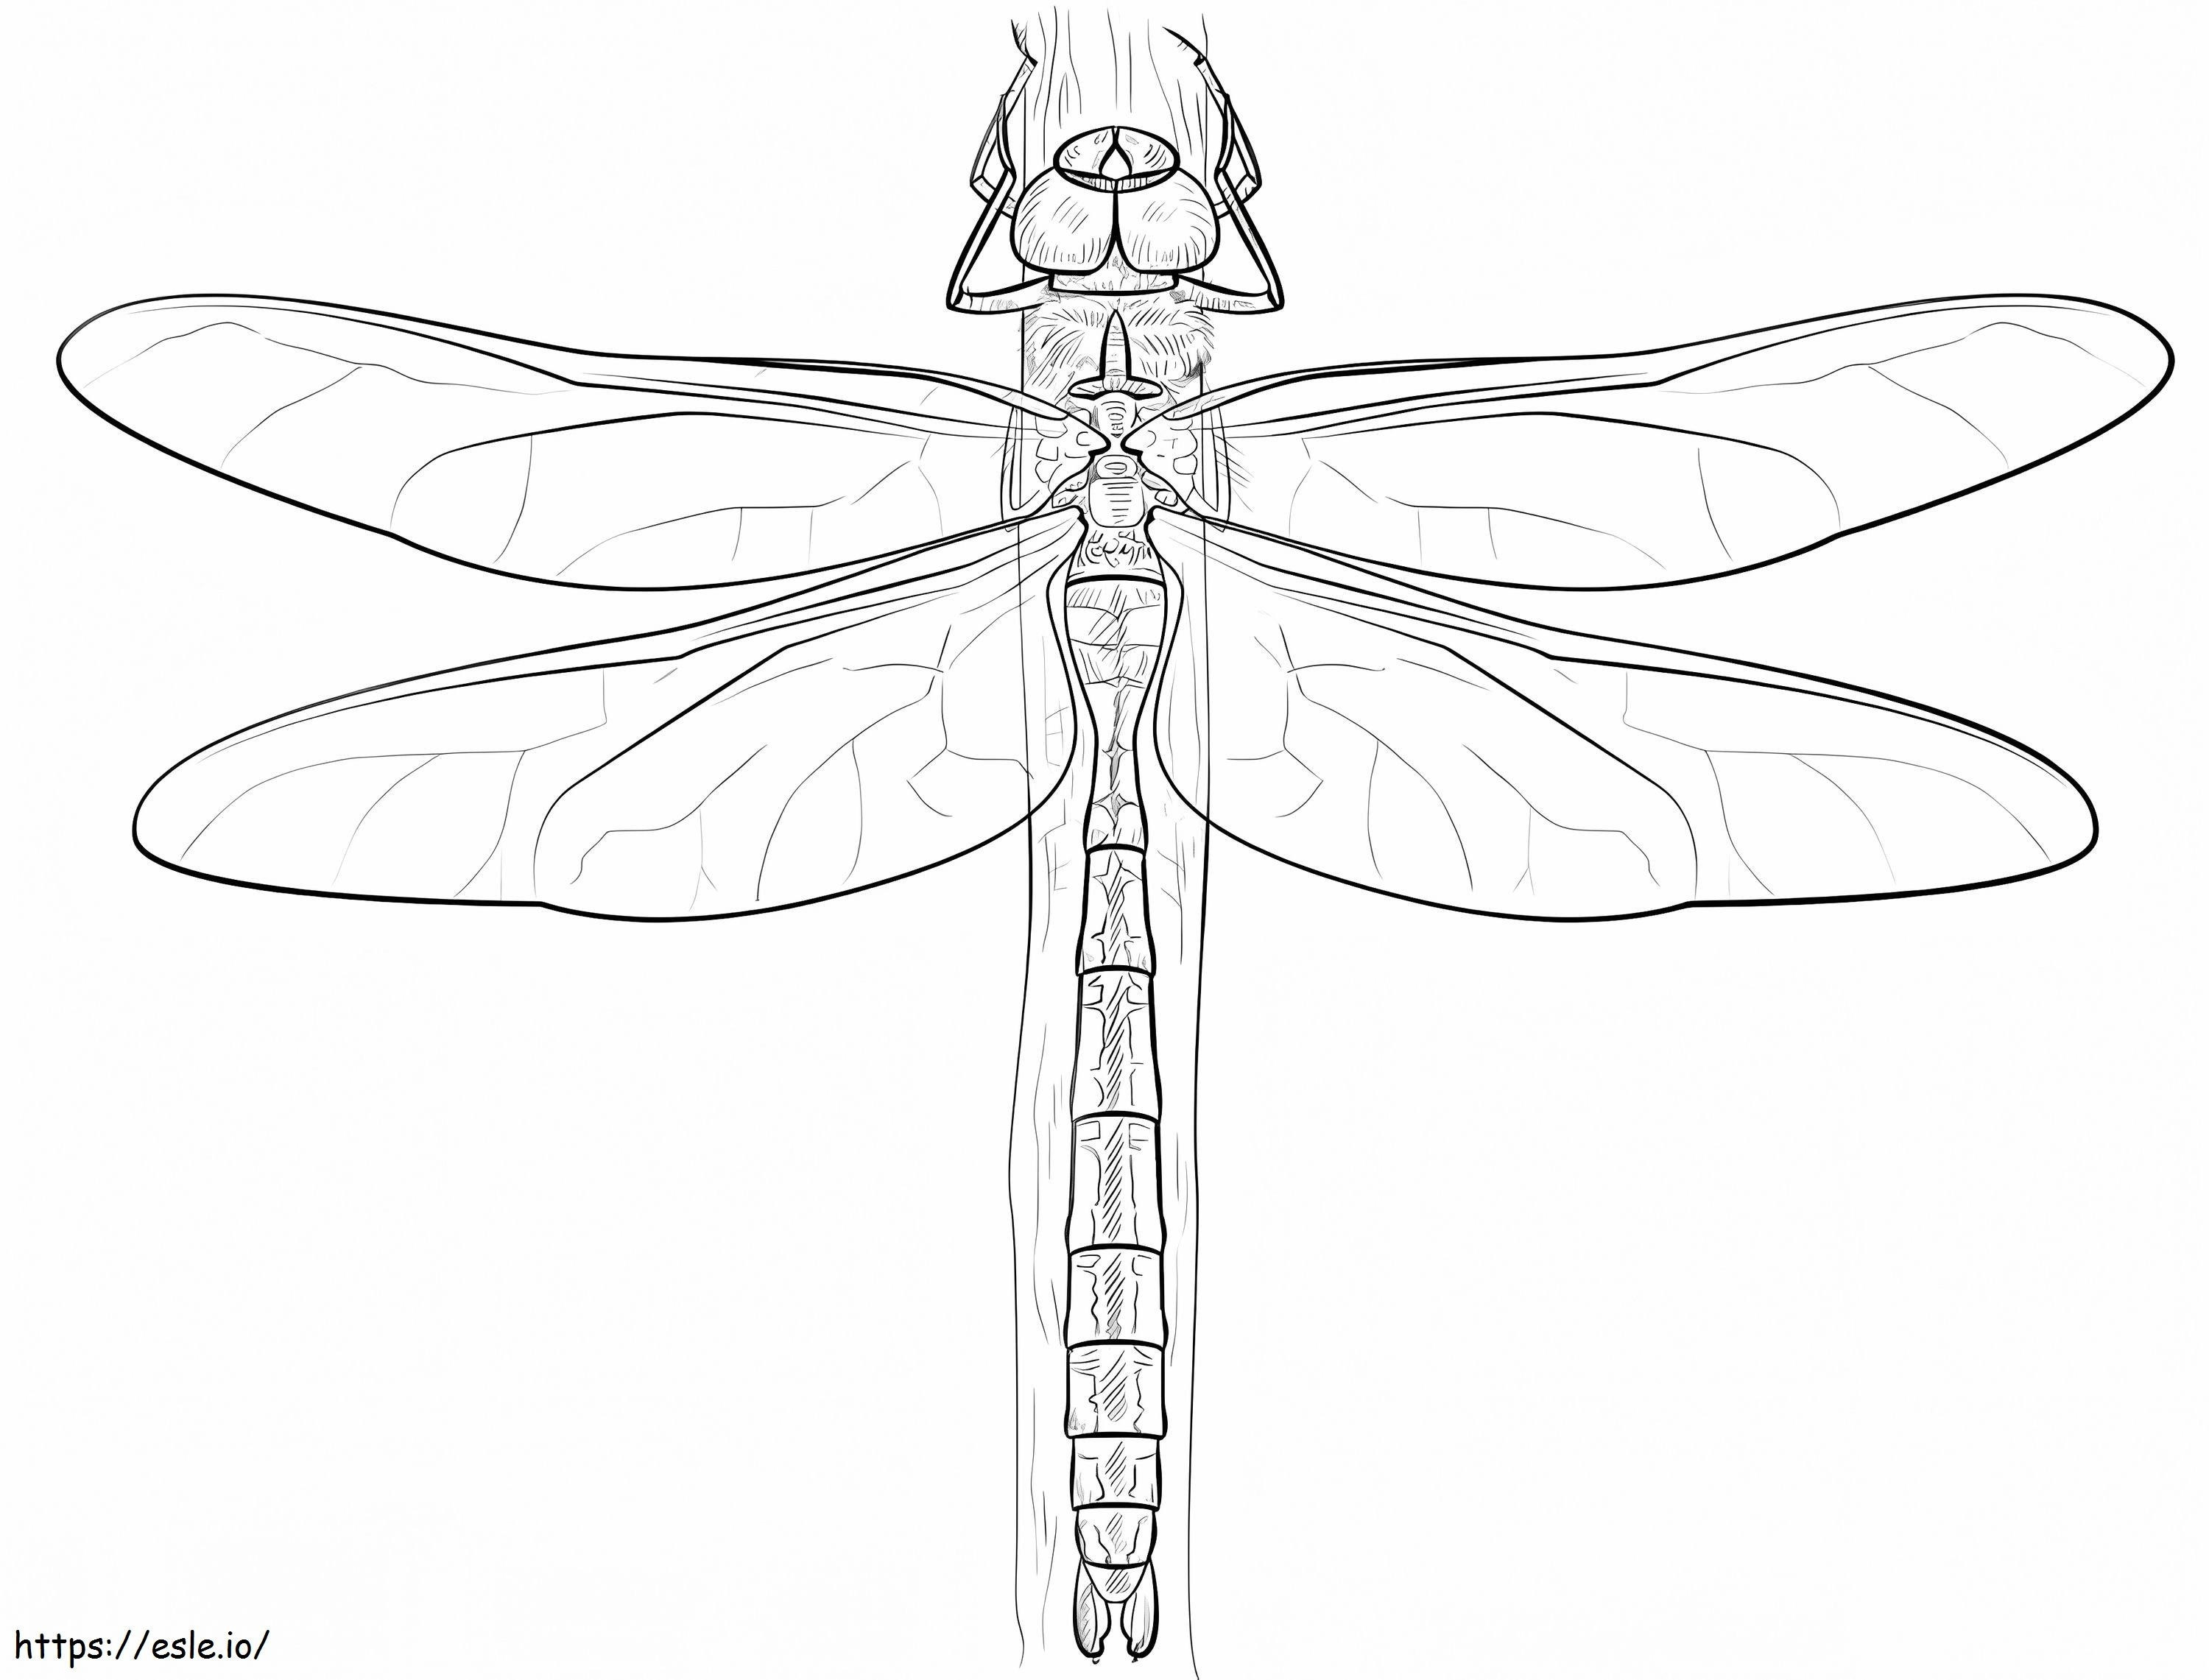 Emperor Dragonfly coloring page